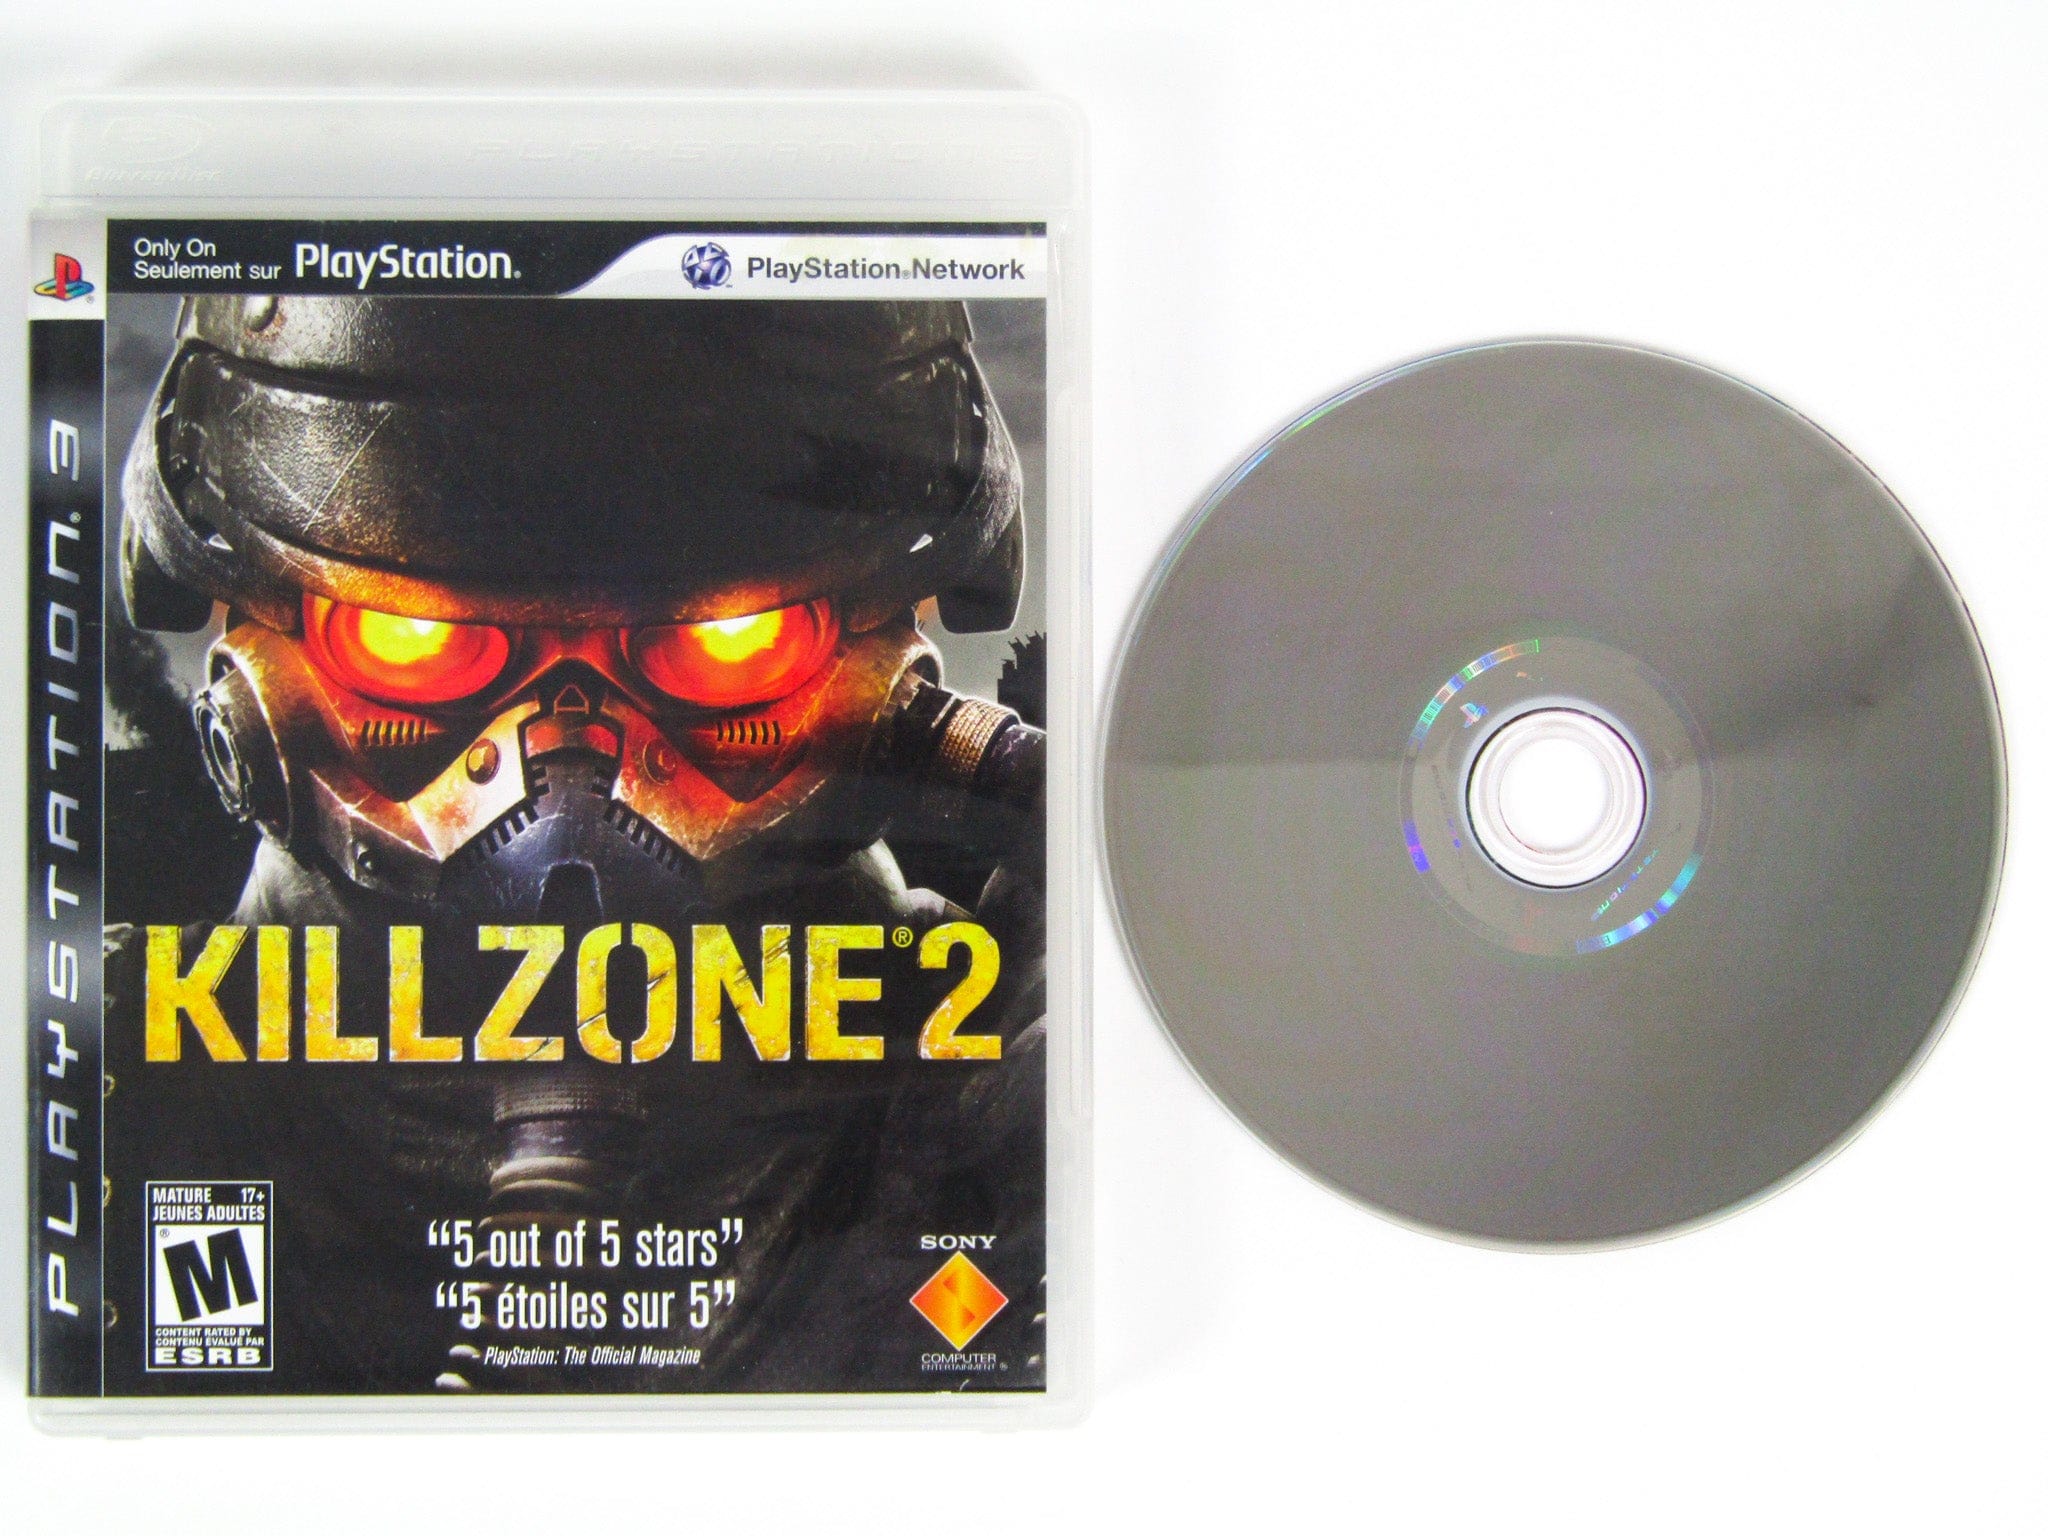 Killzone (Playstation 2 / PS2) – RetroMTL